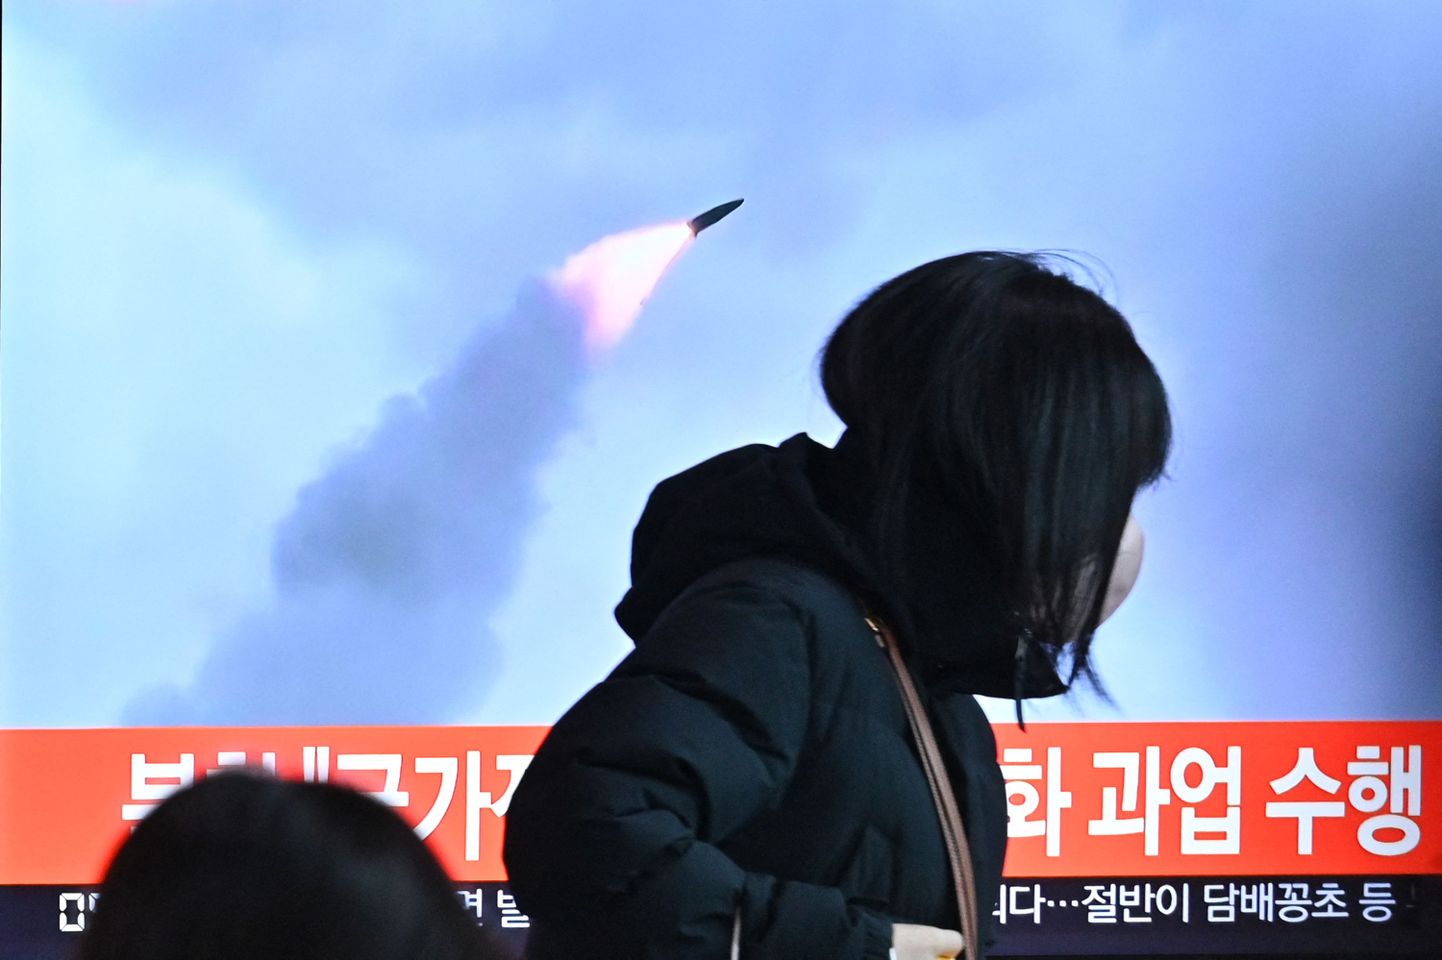 По данным Японии и Южной Кореи, руководство КНДР в очередной раз произвело запуск ракеты, предположительно, баллистической.